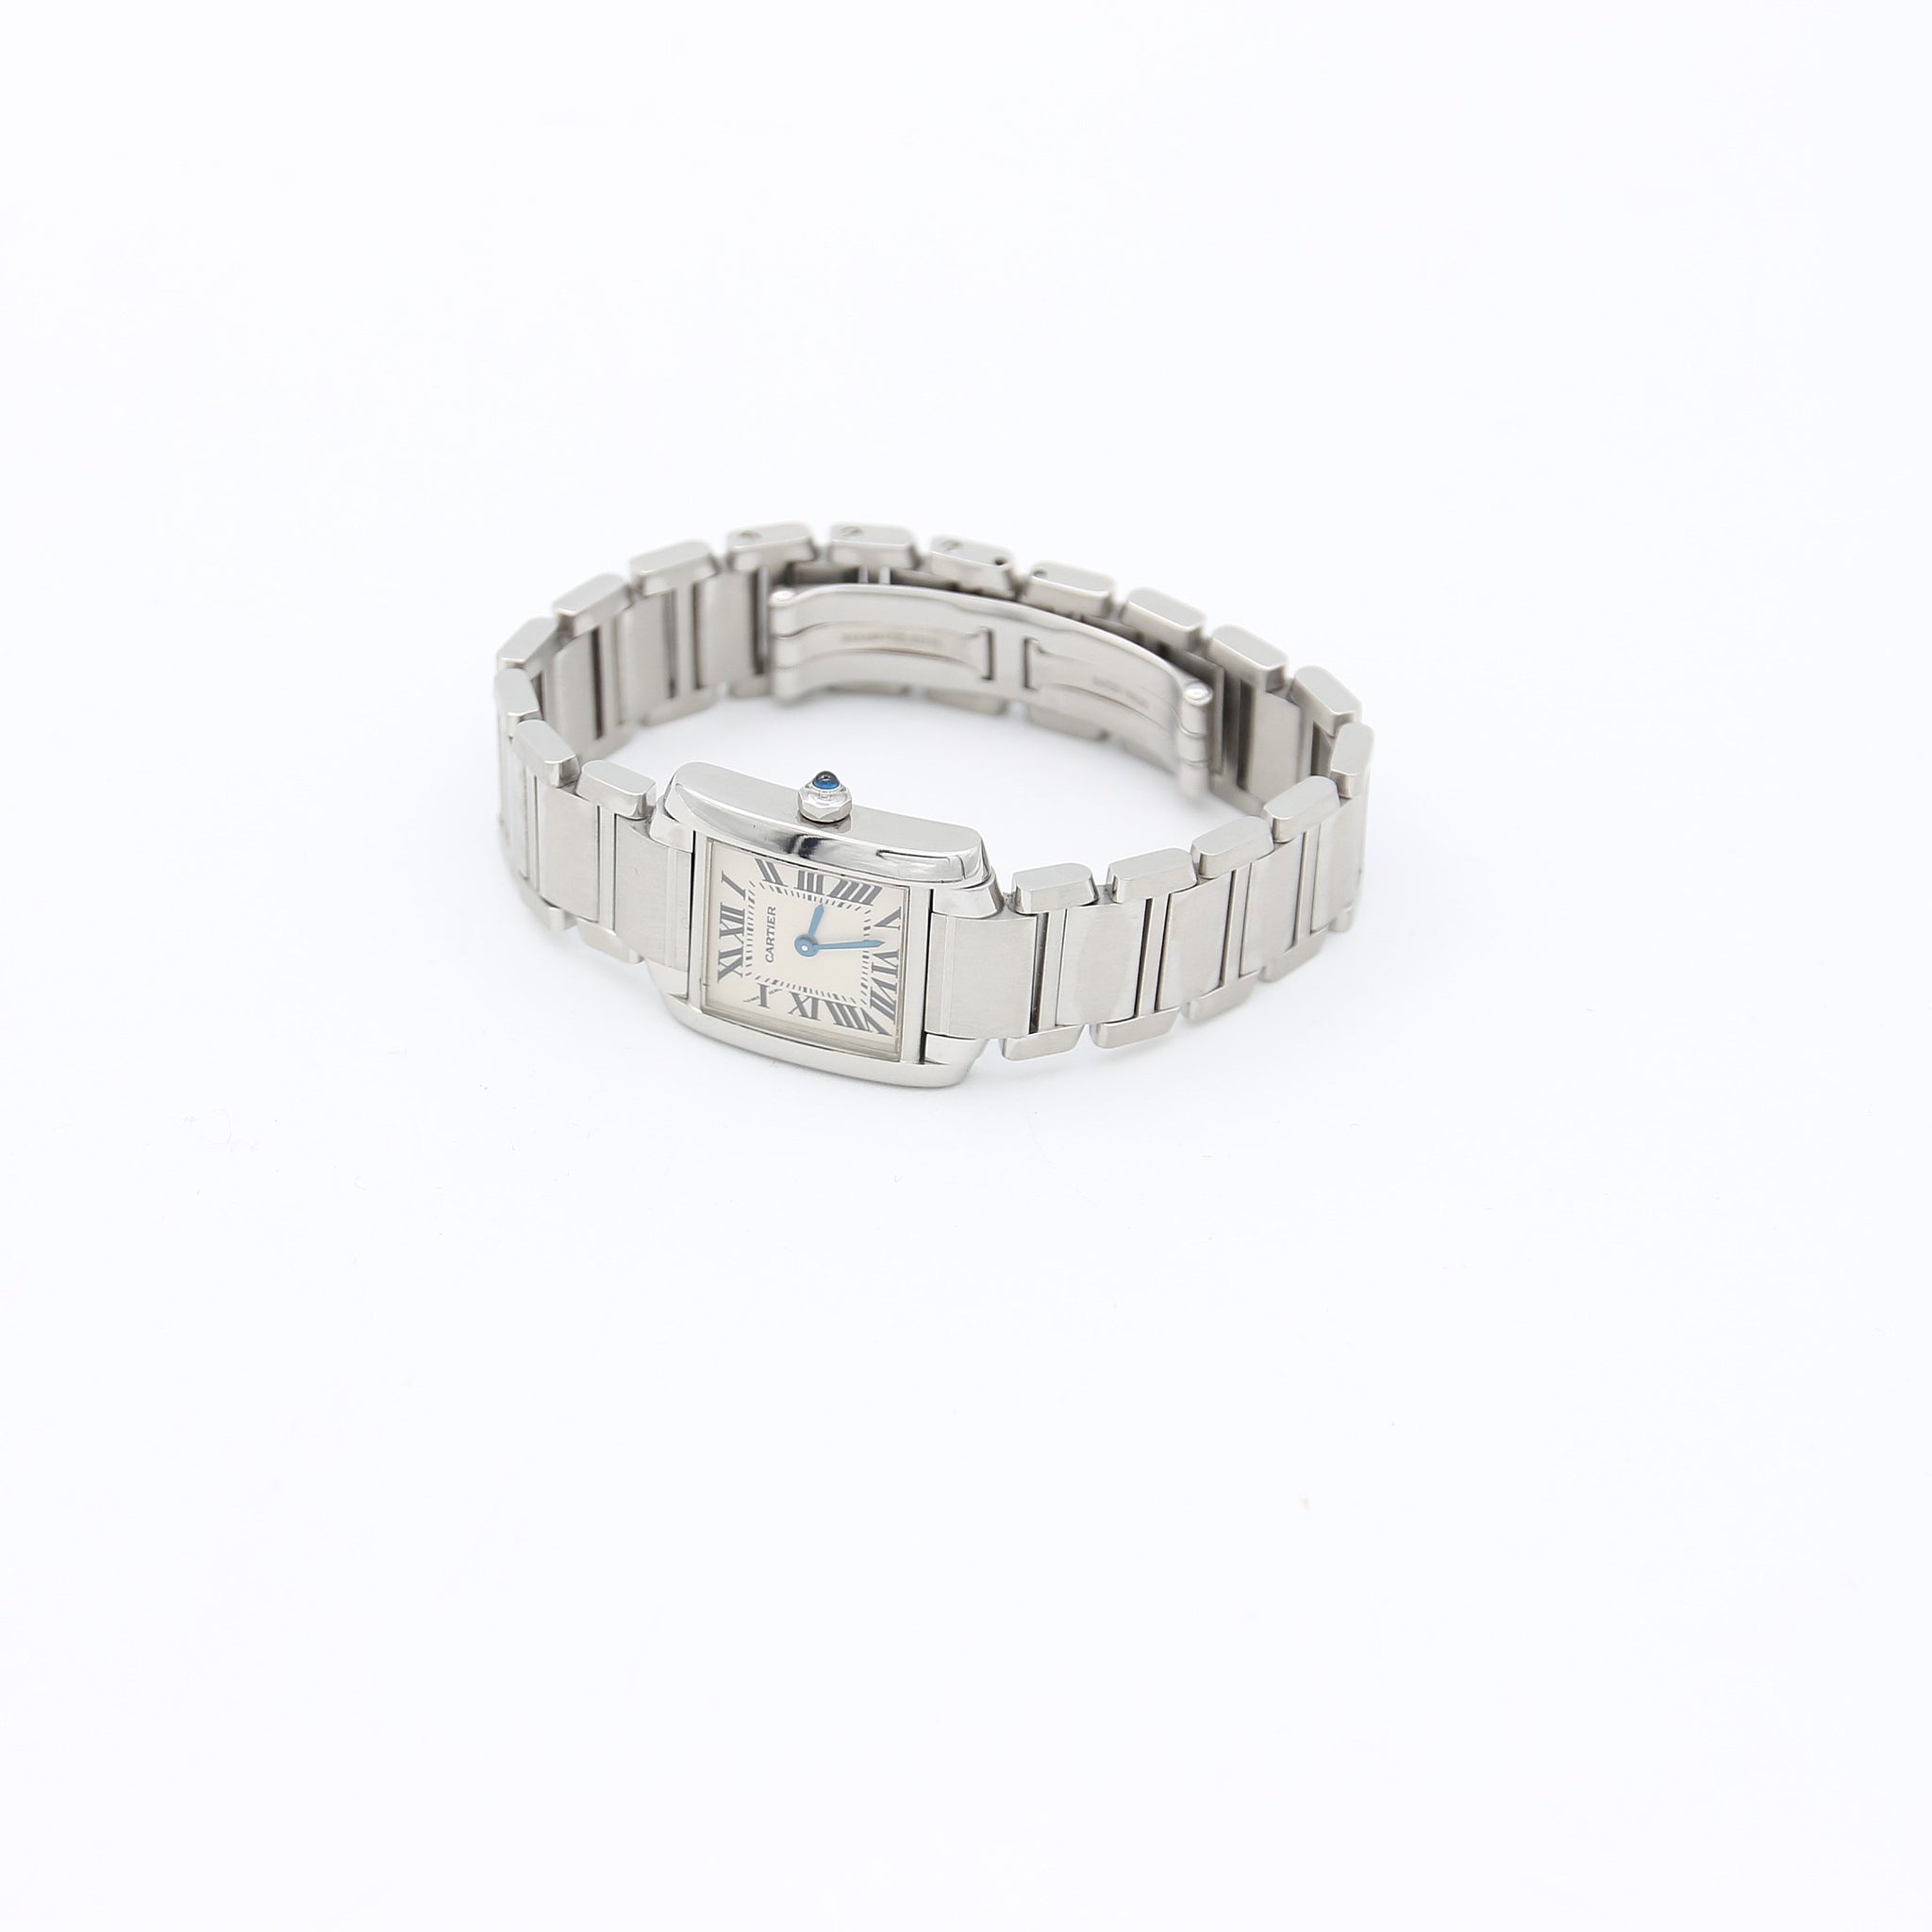 Cartier Bracelet Love White gold 750  buy for 4269200 KZT in the official  Viled online store art B6067618